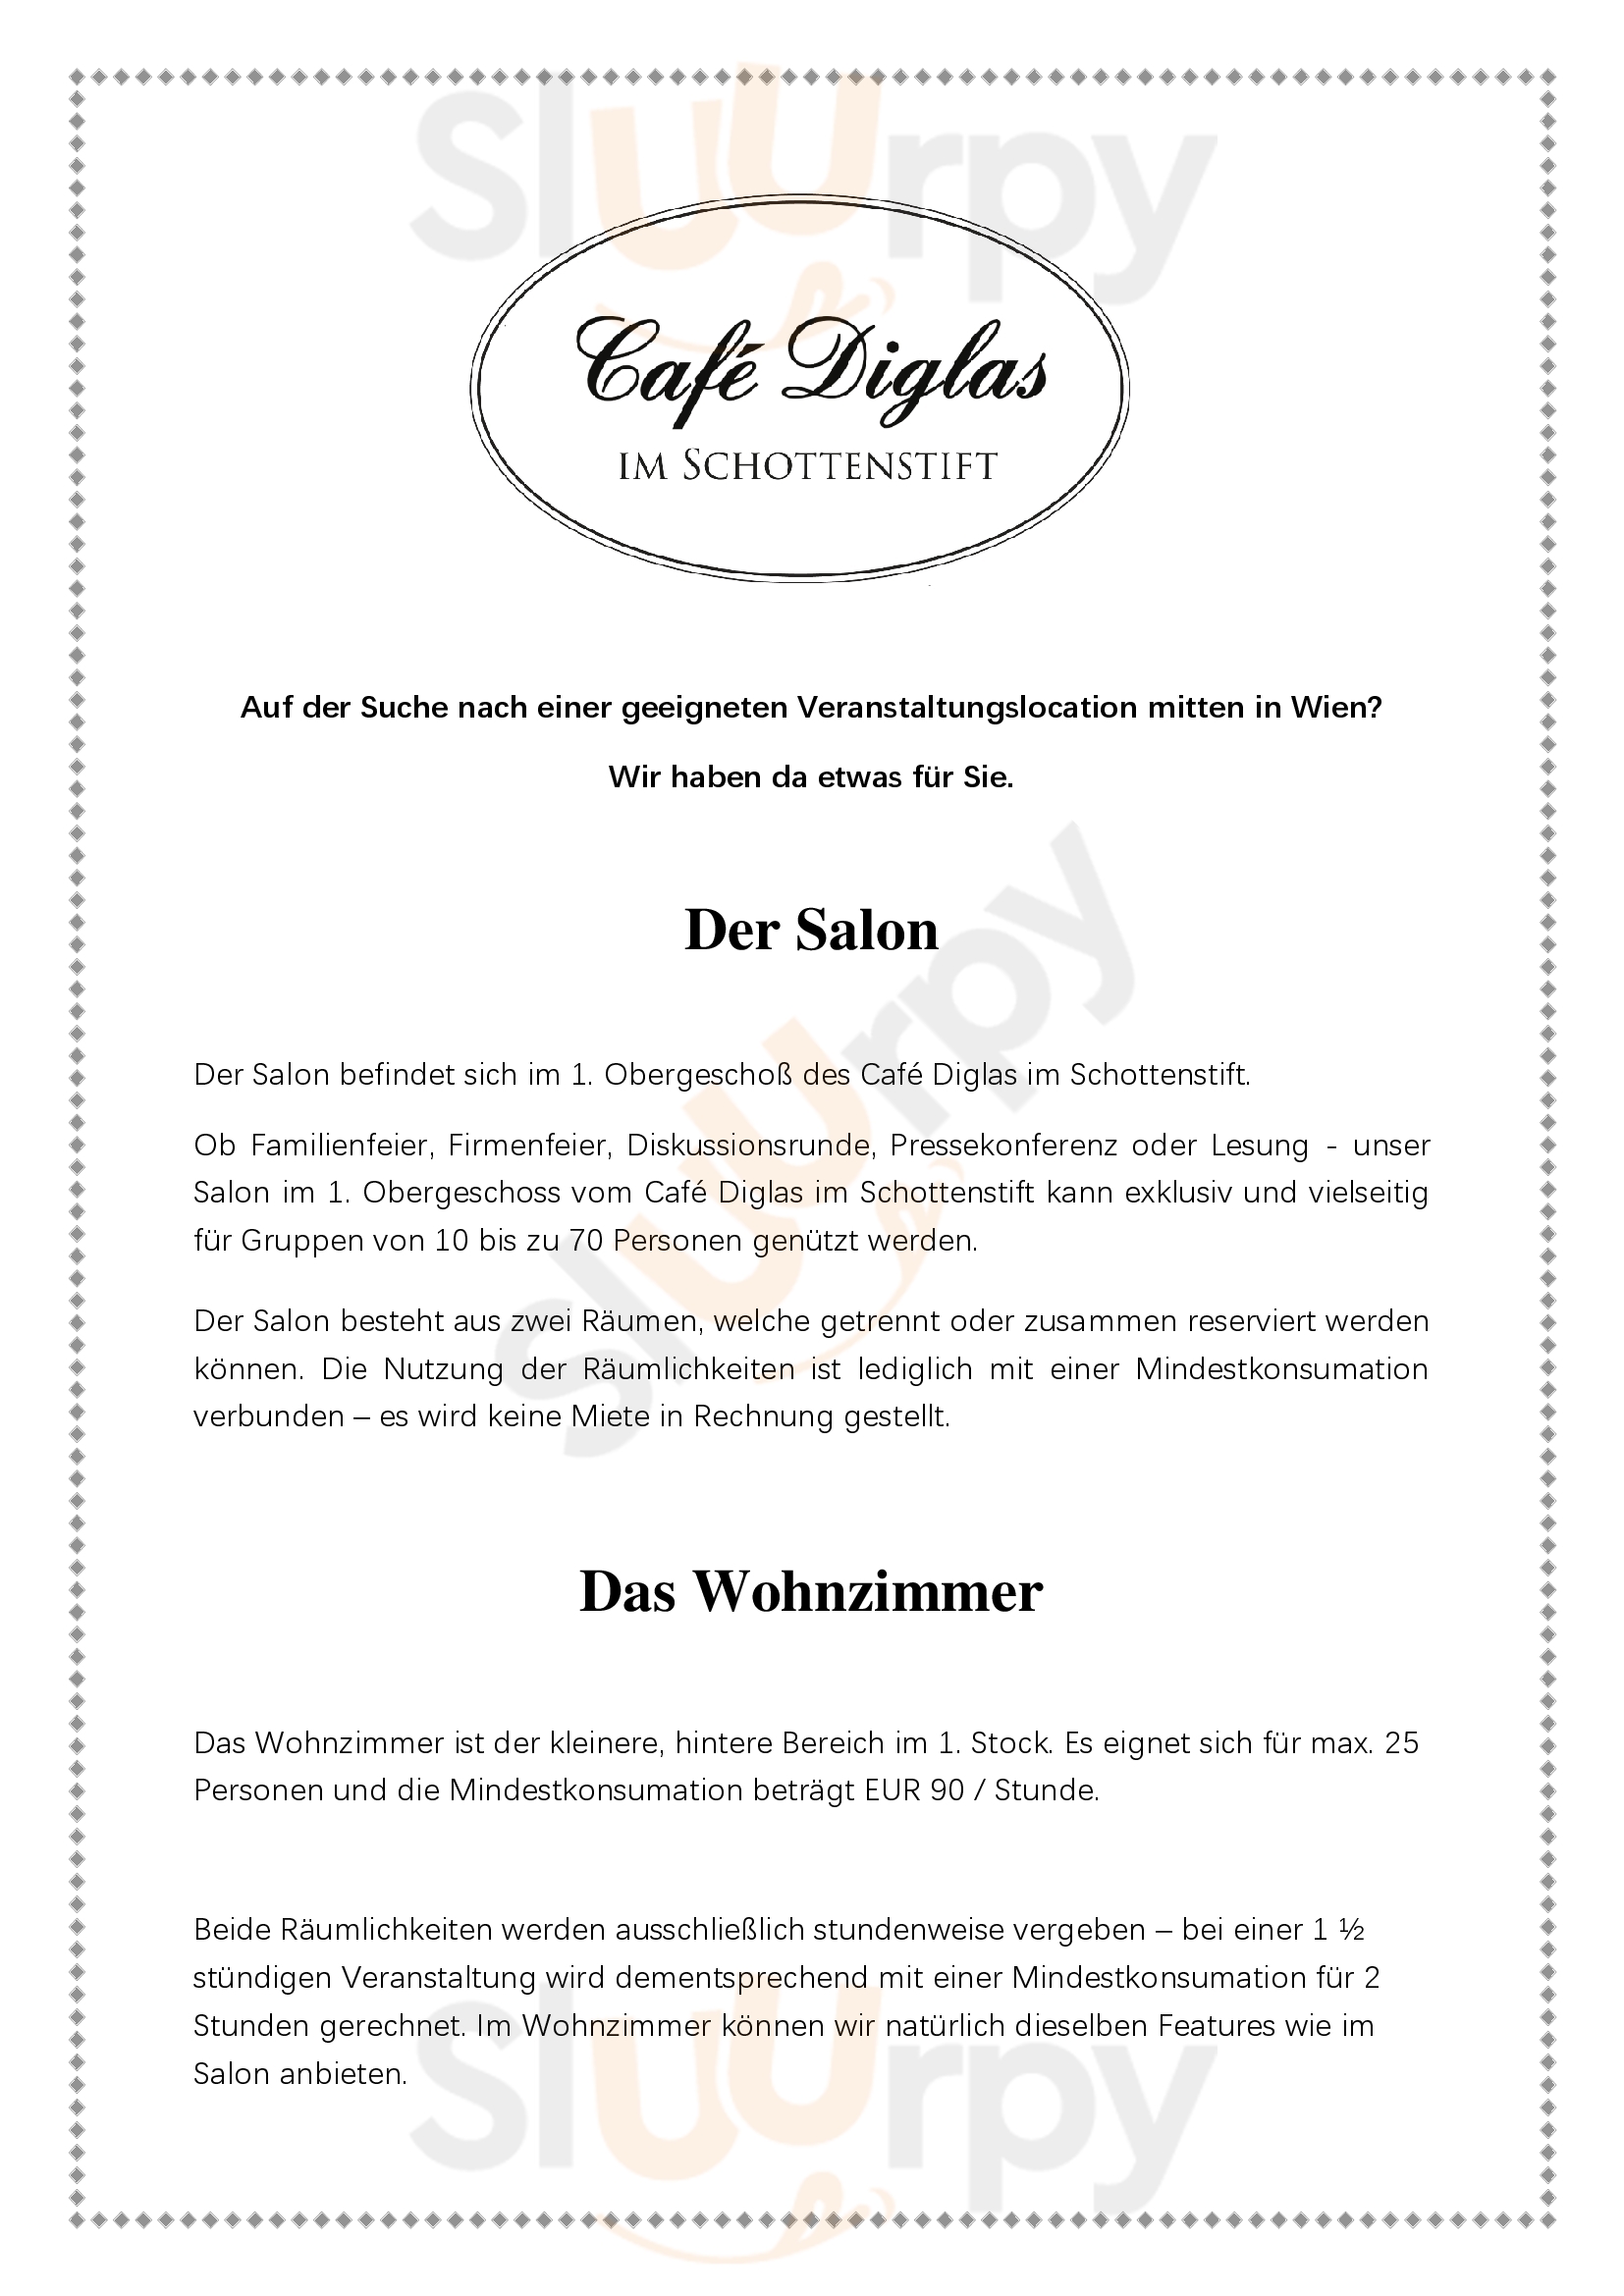 Cafe Diglas Im Schottenstift Wien Menu - 1